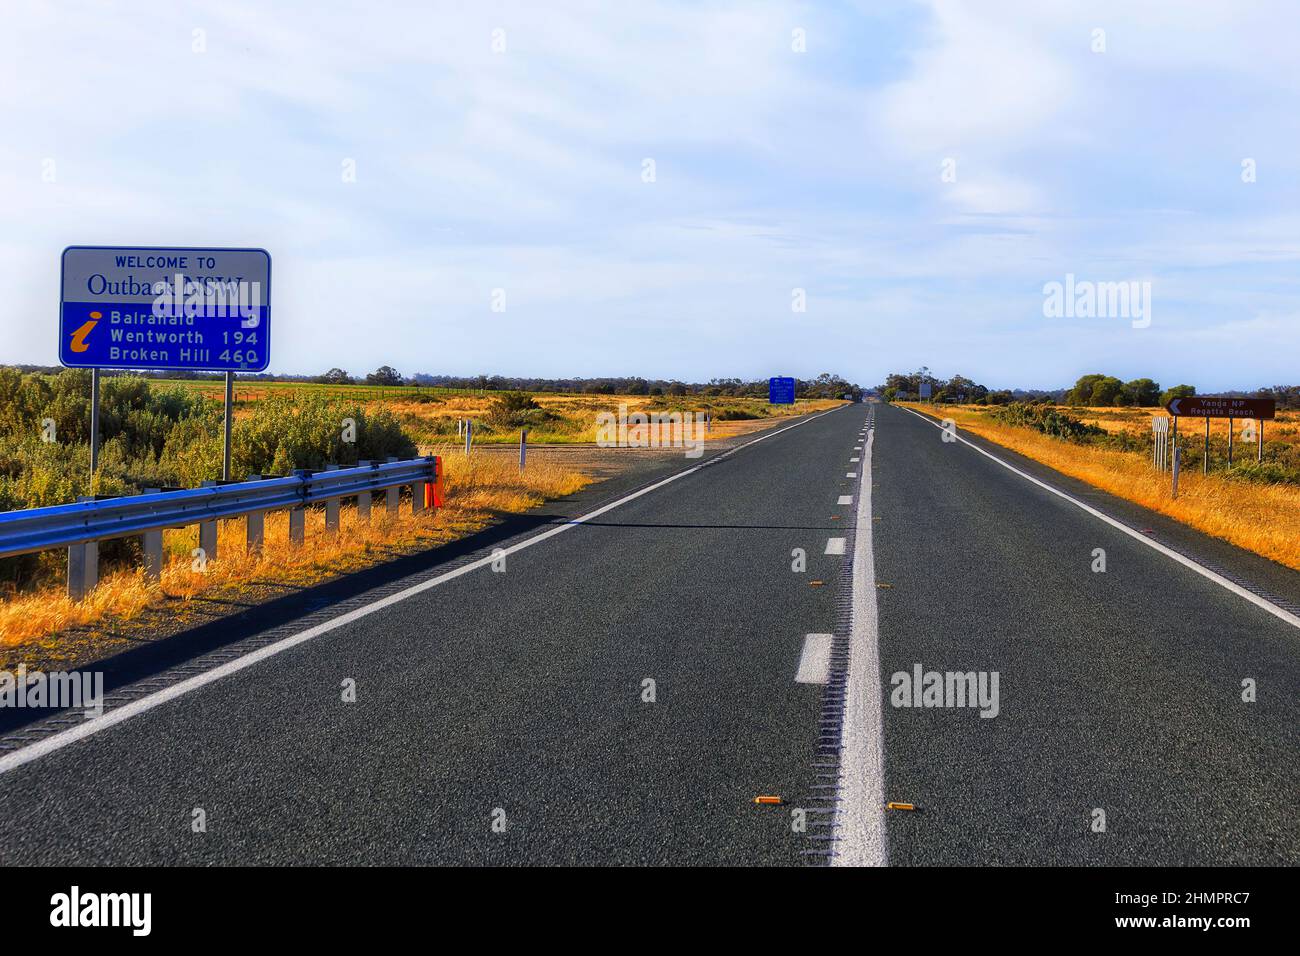 Sturt Highway Bienvenue à Outback Road panneau latéral avec des distances à d'autres destinations de Balranald, Wentworth, Broken Hill. Banque D'Images